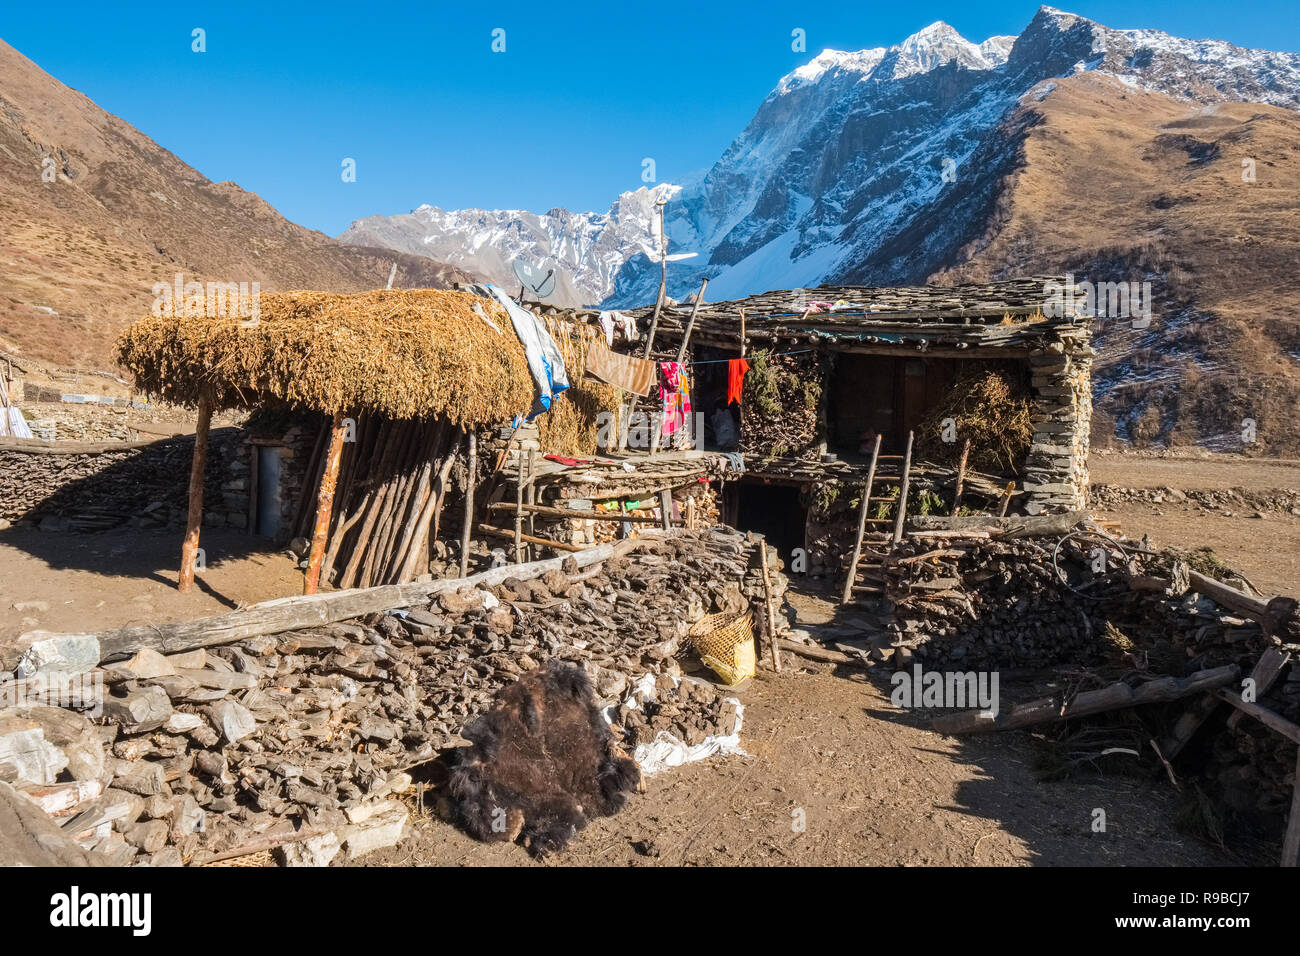 Le village tibétain de Samdo sur le Manaslu trek Circuit est composé de 2 maisons traditionnelles histoire avec le bétail ci-dessous logement Banque D'Images